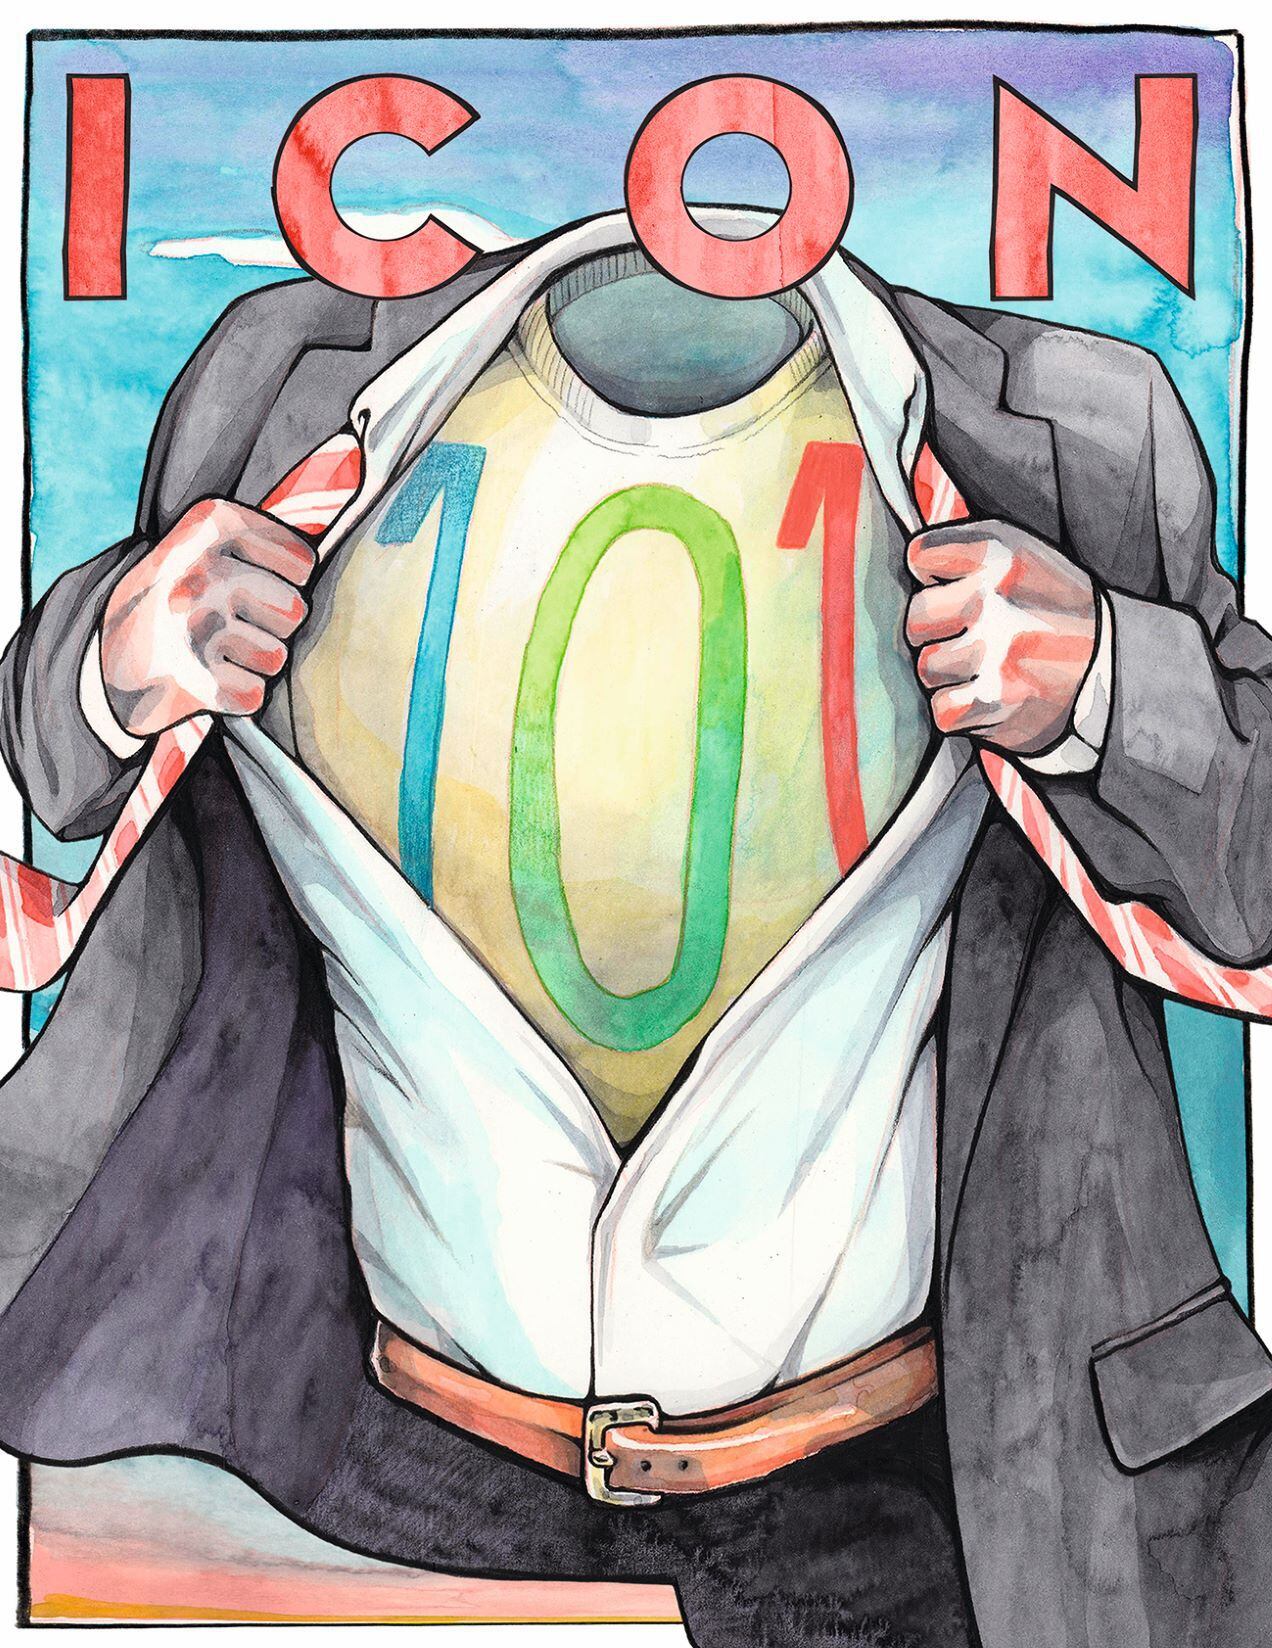 La portada que el dibujante Pol Anglada diseñó para el número 101 de ICON: un hombre por fuera y superhéroe por dentro.